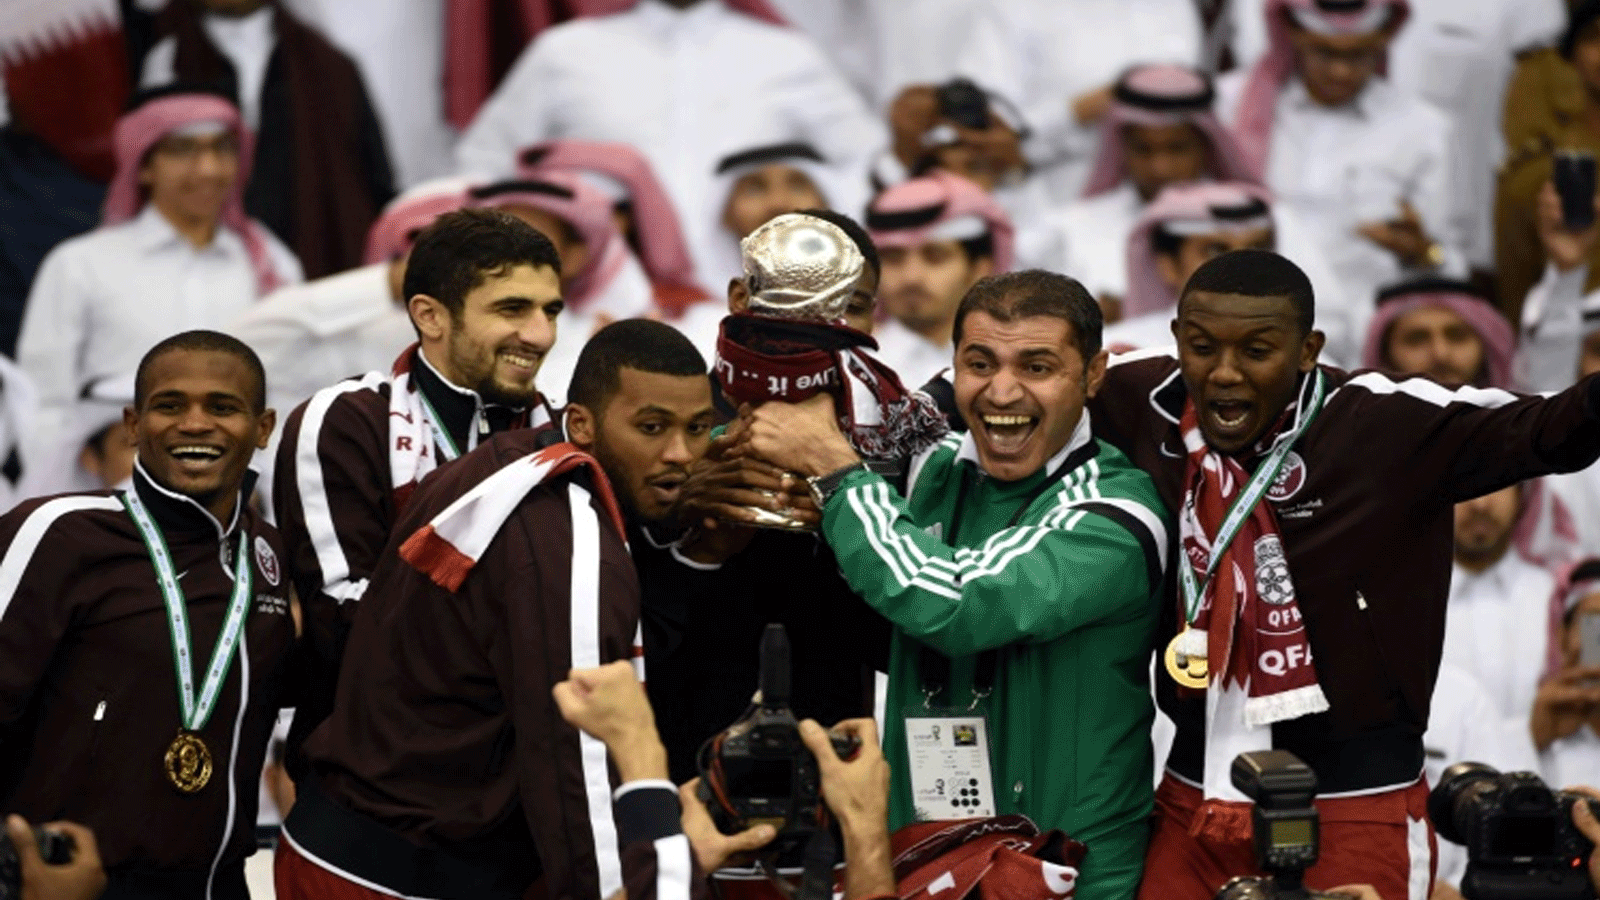 لاعبو قطر يحتفلون بلقبهم الثالث في كأس الخليج الـ22 عام 2014 في السعودية